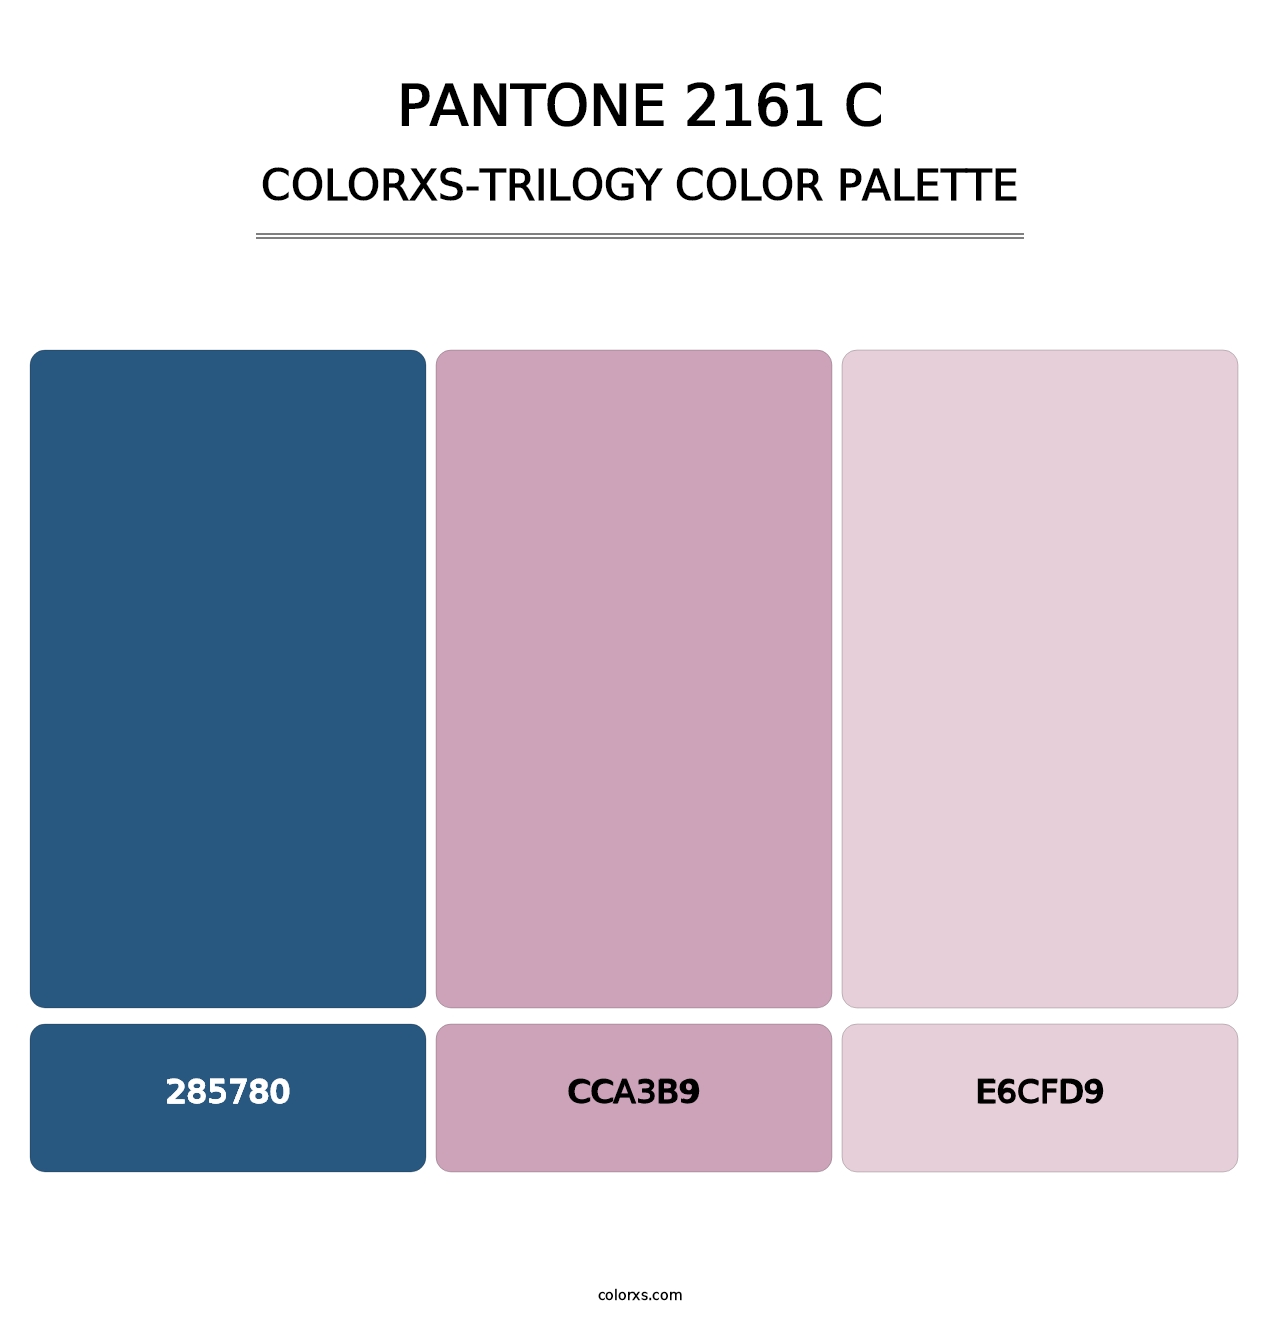 PANTONE 2161 C - Colorxs Trilogy Palette